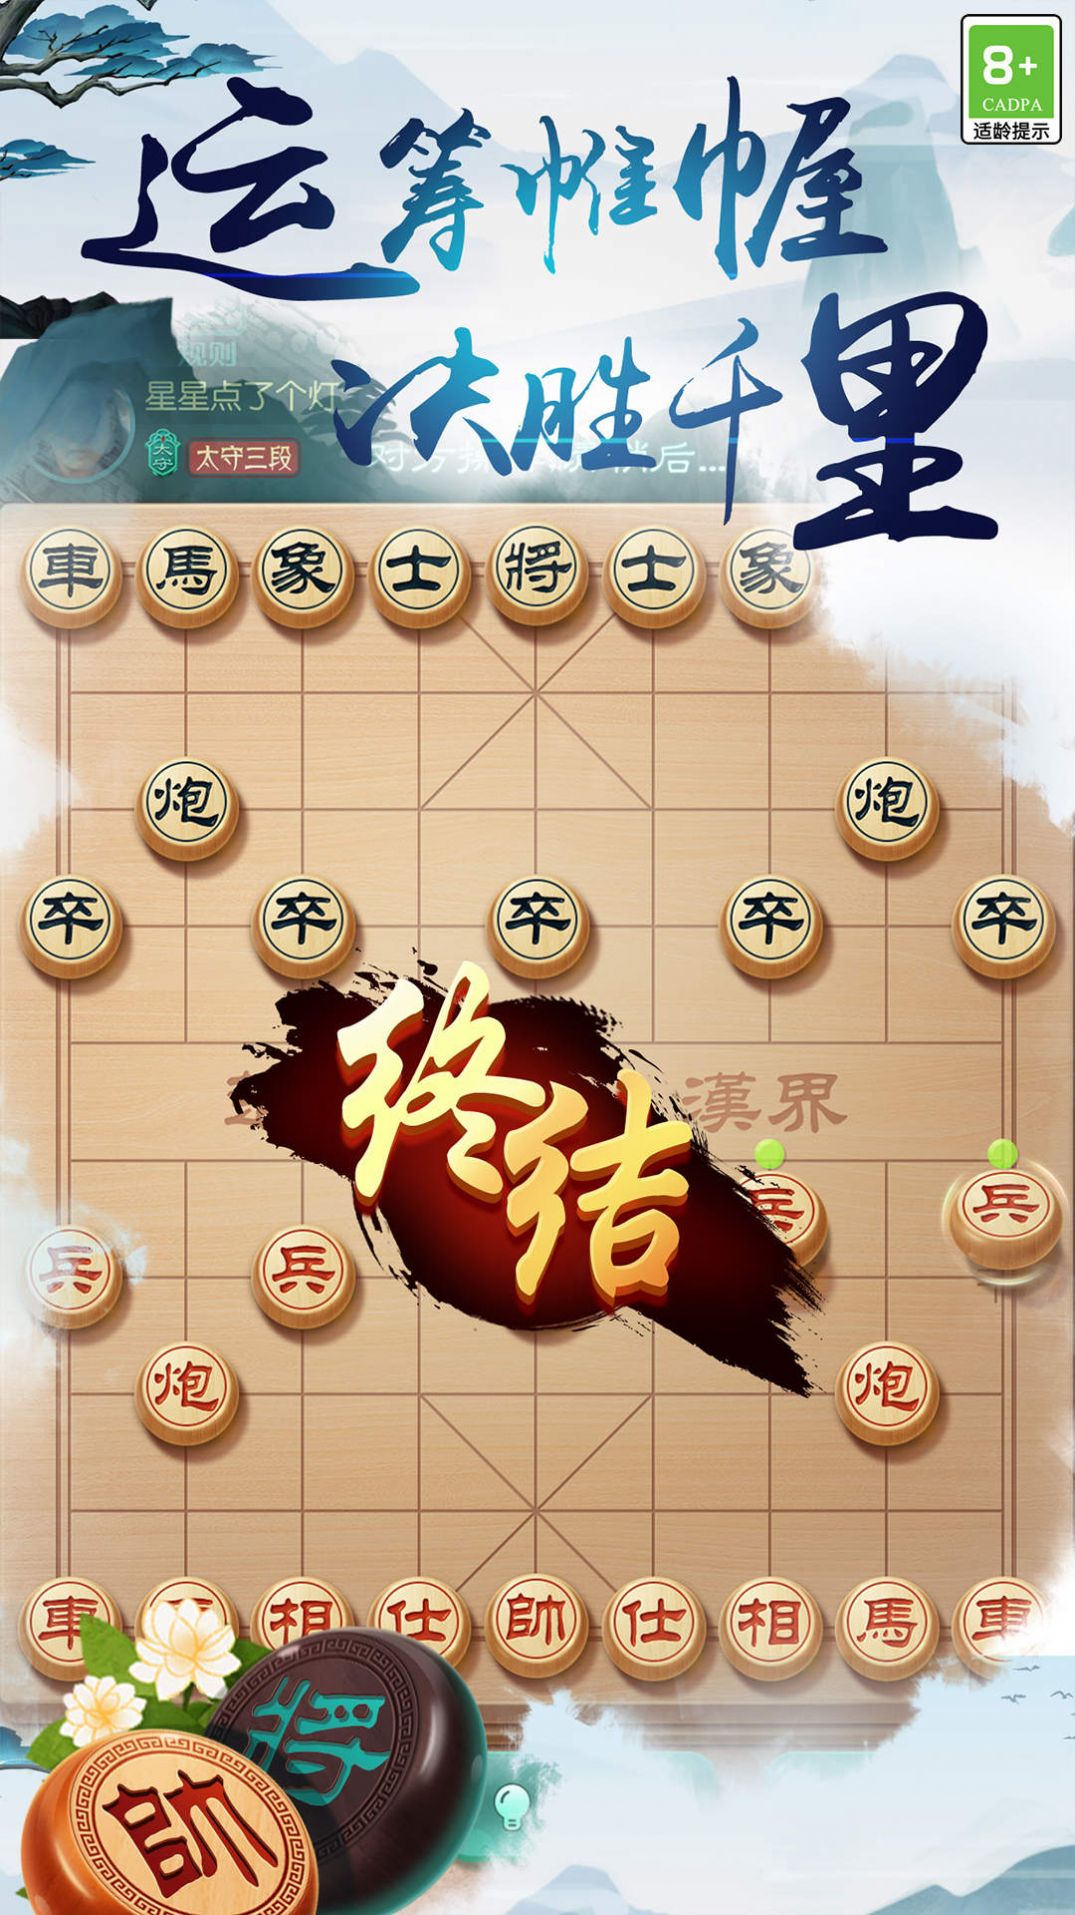 中国象棋之战